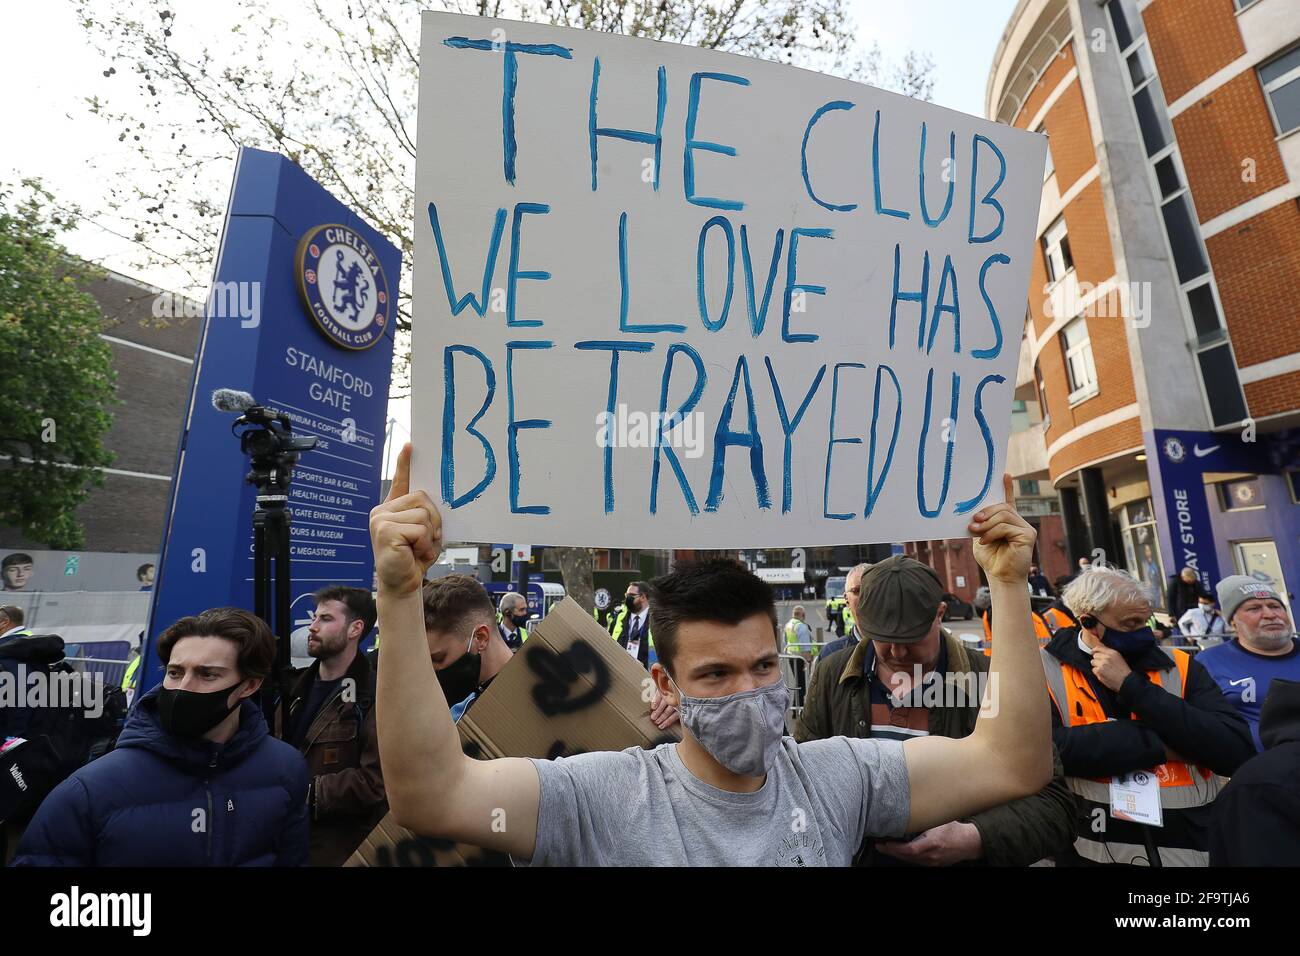 Londres, Royaume-Uni. 20 avril 2021. Les fans protestent devant le stade contre la Super League européenne proposée avant le match entre Chelsea et Brighton au stade Stamford Bridge le 20 avril 2021 à Londres, au Royaume-Uni Banque D'Images